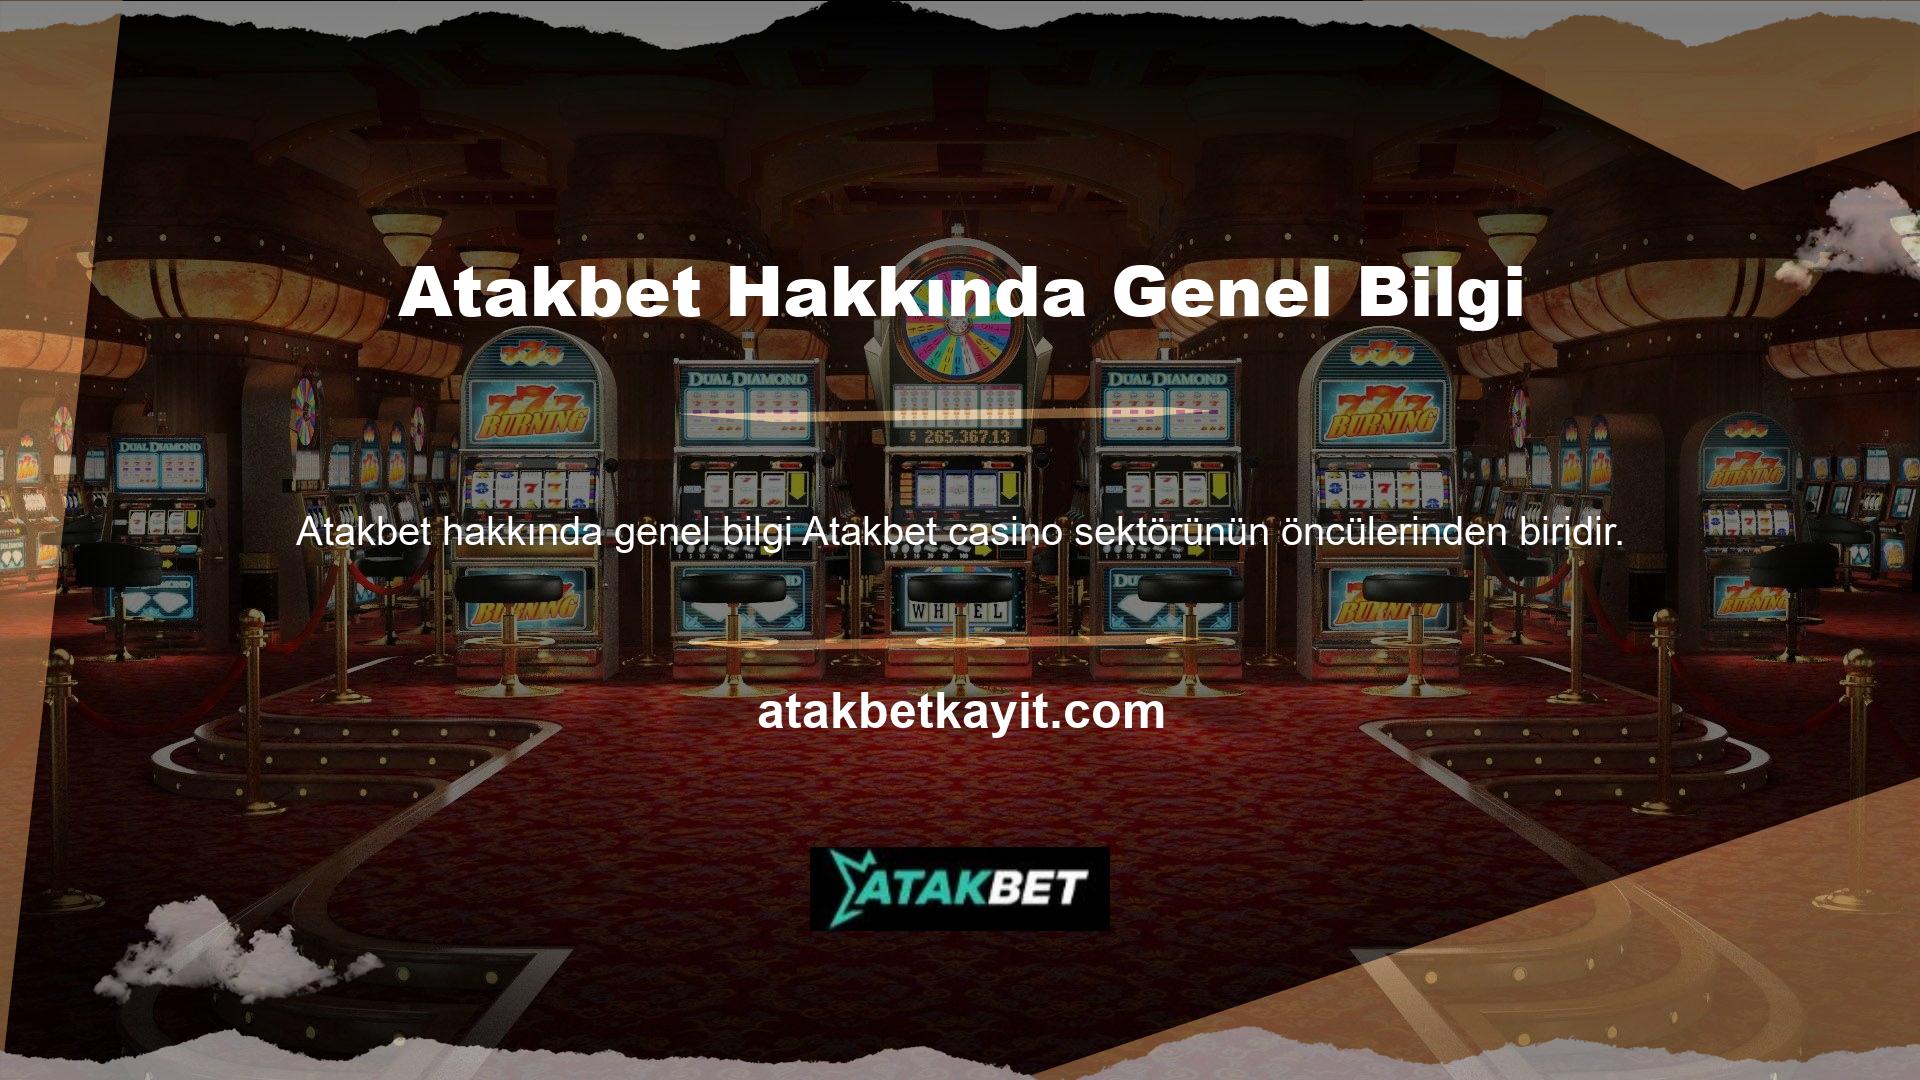 Türk casino sektörü önemli ölçüde büyüdü, gelişti ve güvenilir hale geldi